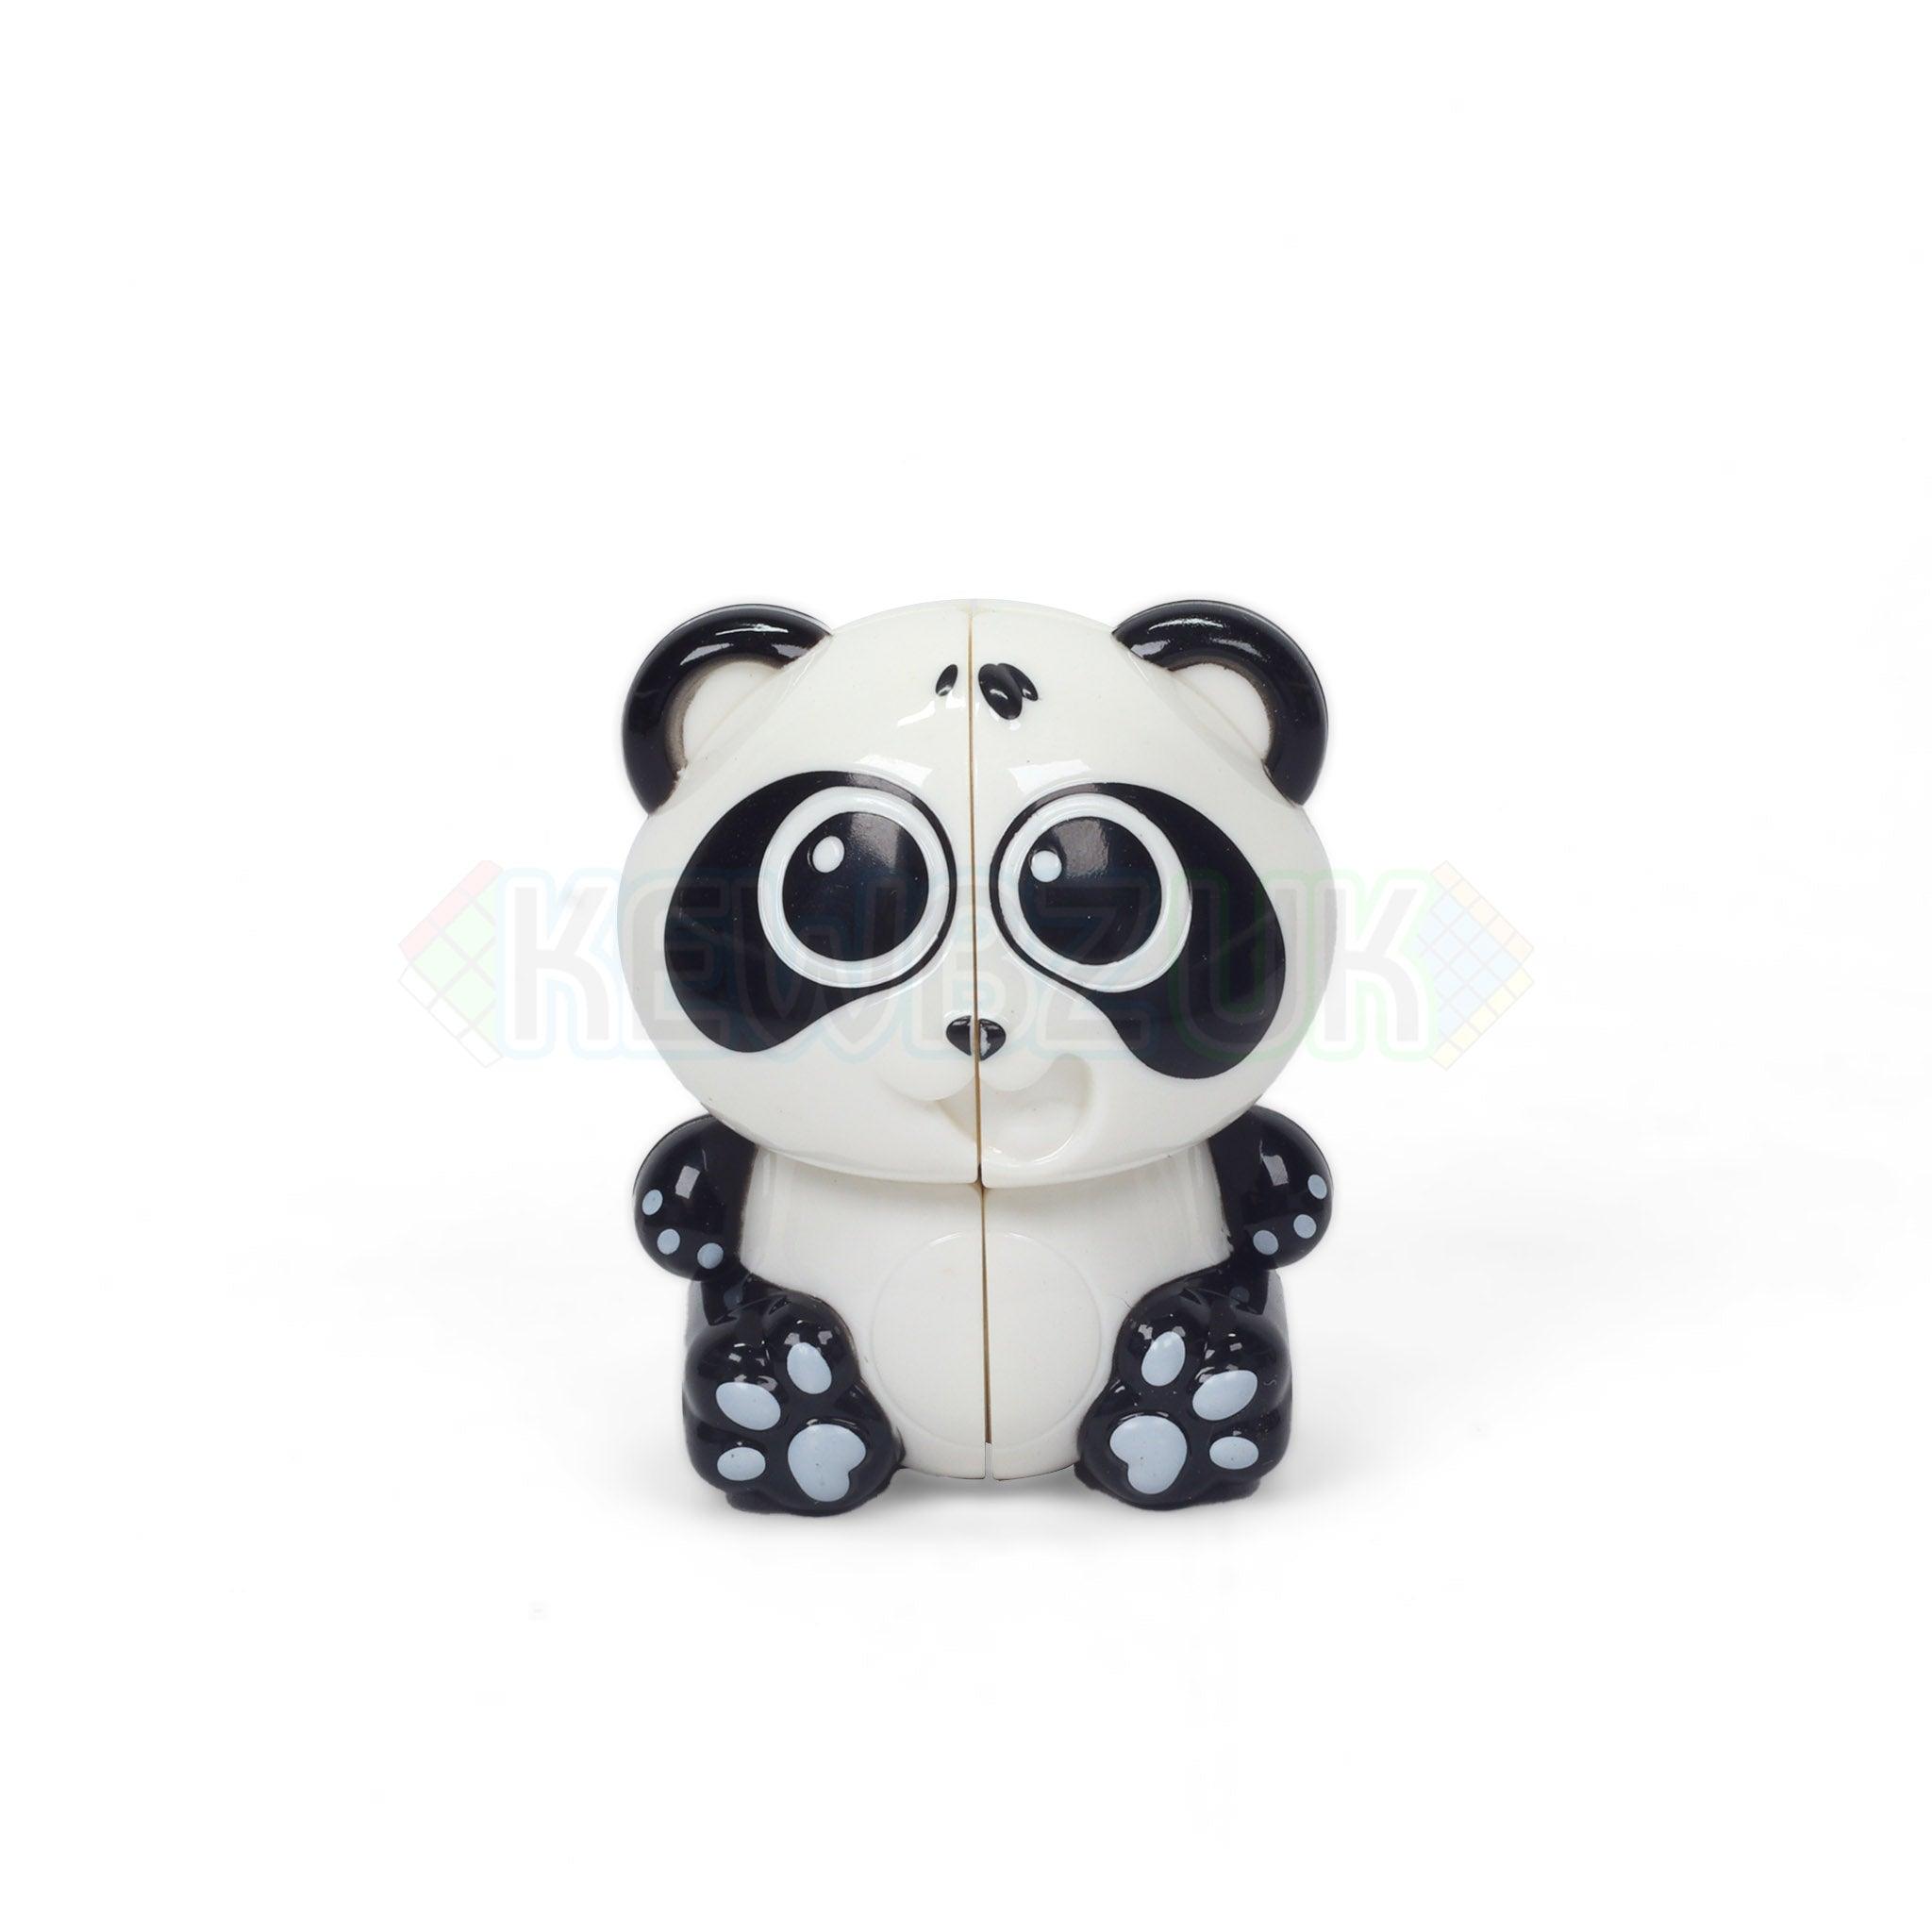 YuXin Panda 2x2 Keychain